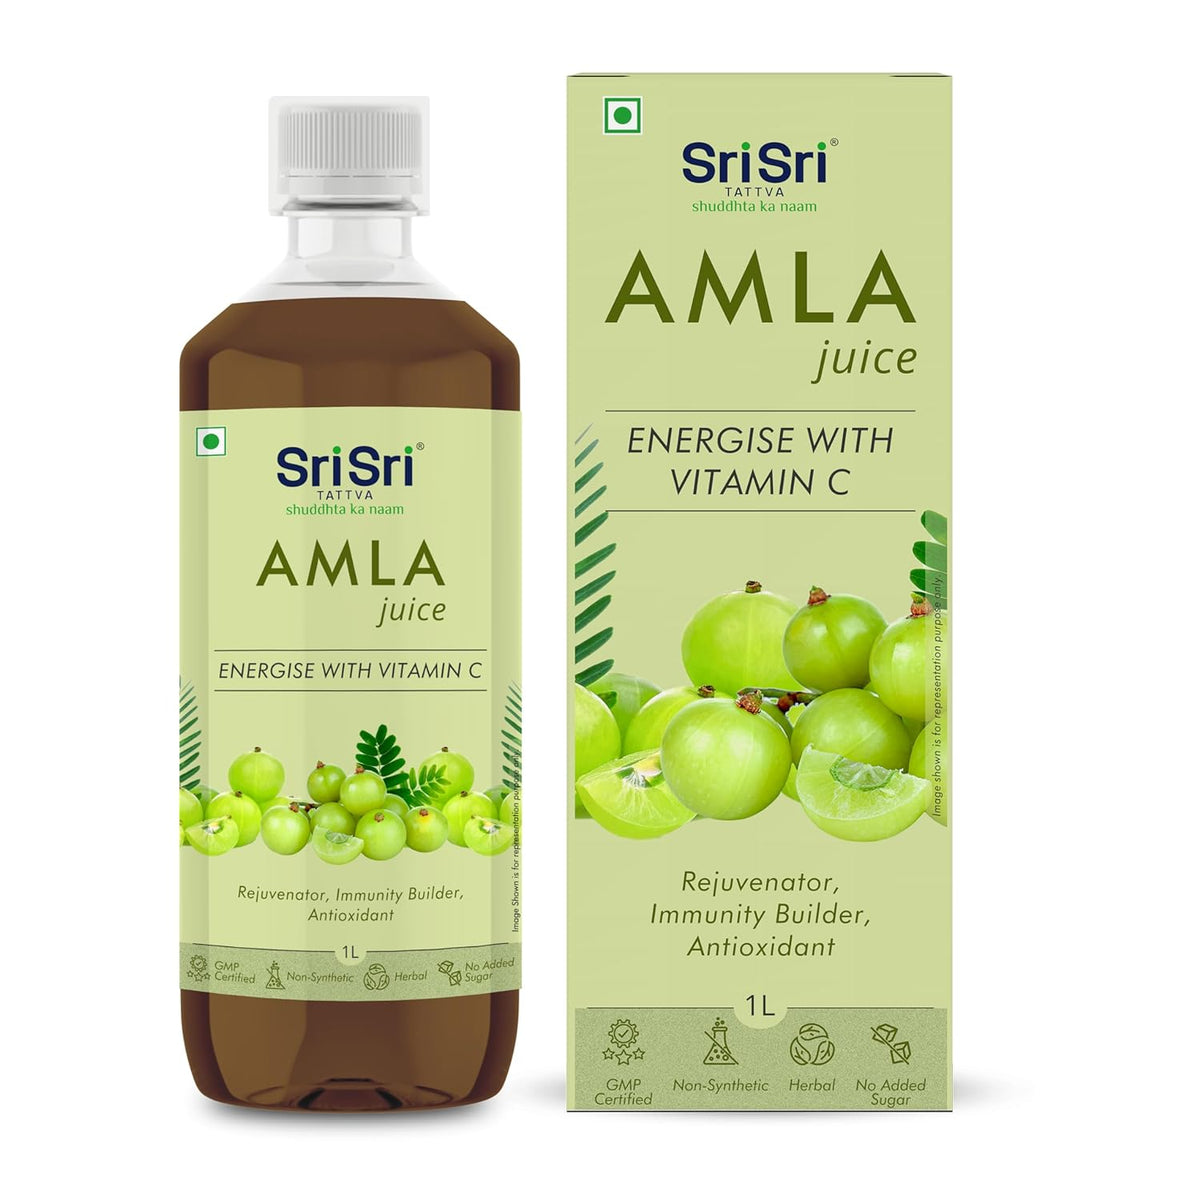 Sri Sri Tattva Ayurvedischer Amla-Saft 1 Liter